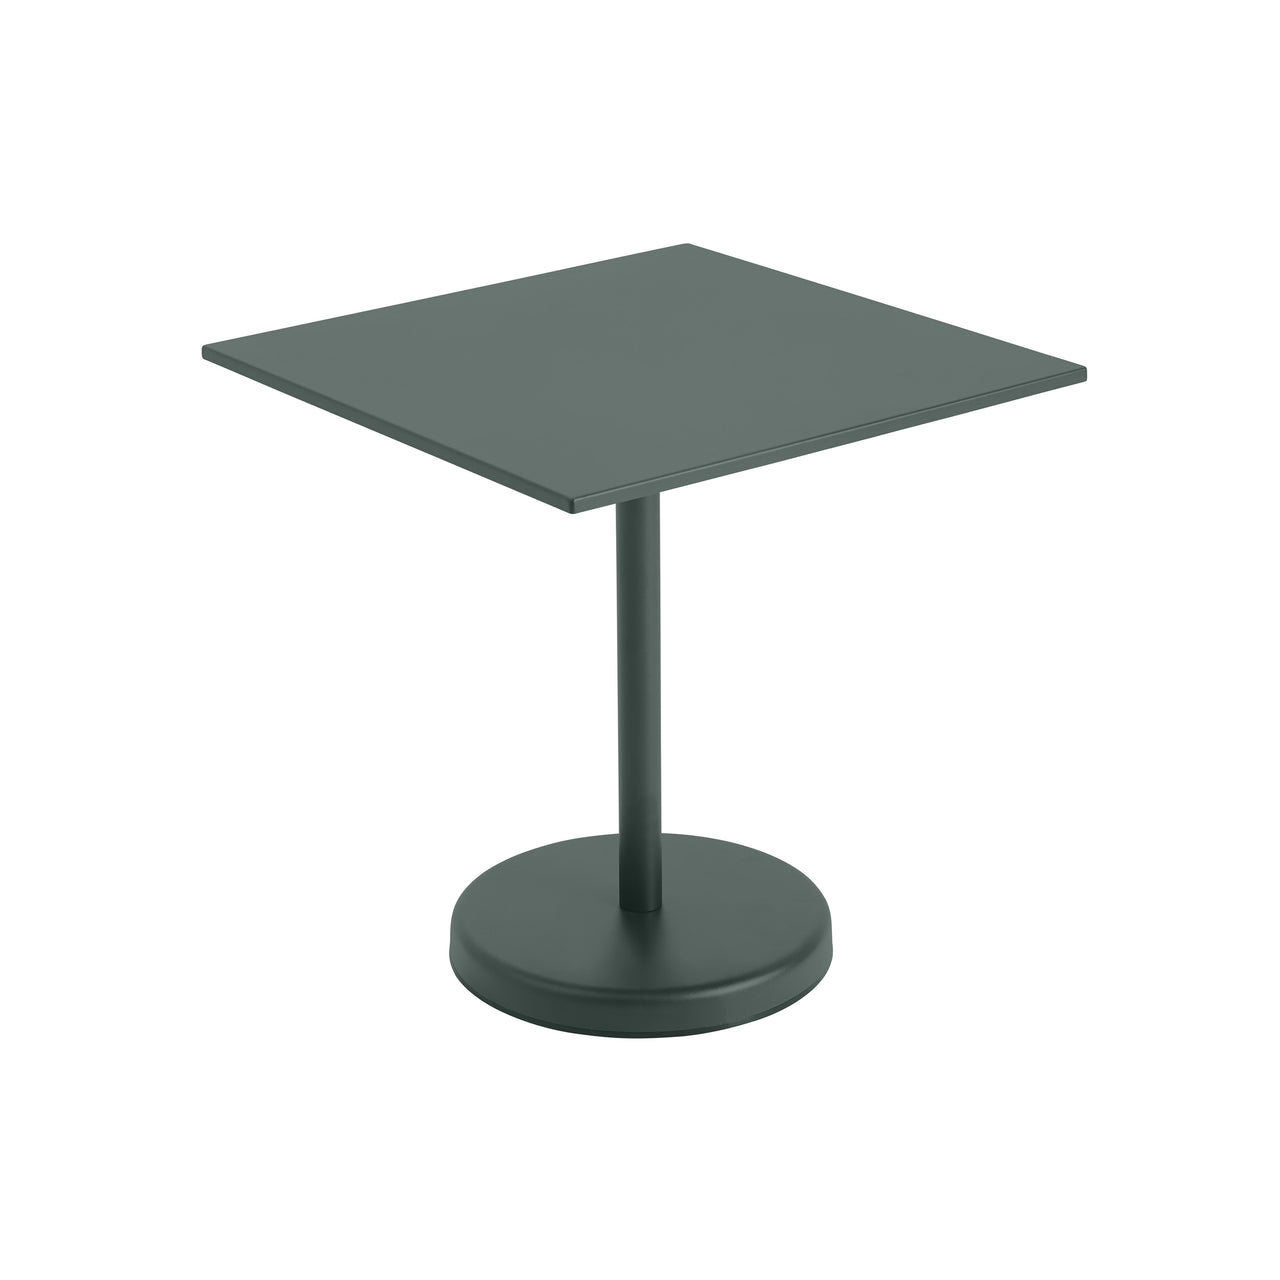 Linear Steel Café Table: Small - 28.9